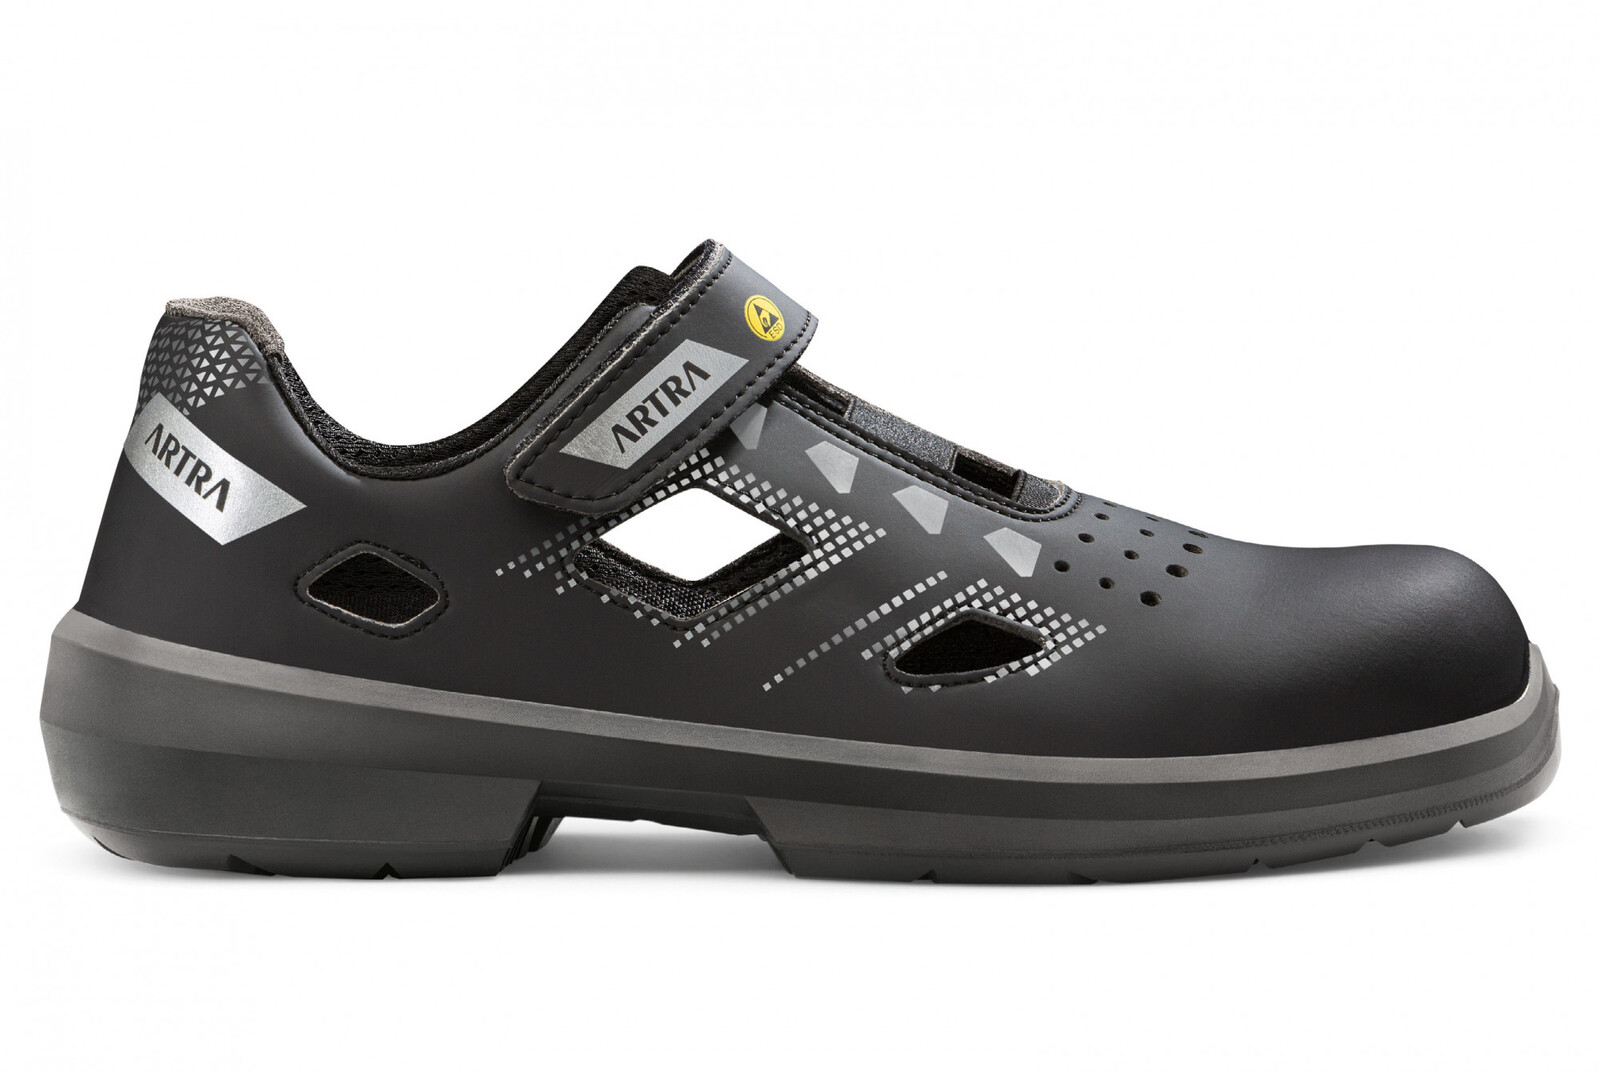 Bezpečnostné sandále Artra Arzo 805 676560 S1 SRC ESD MF - veľkosť: 47, farba: čierna/sivá